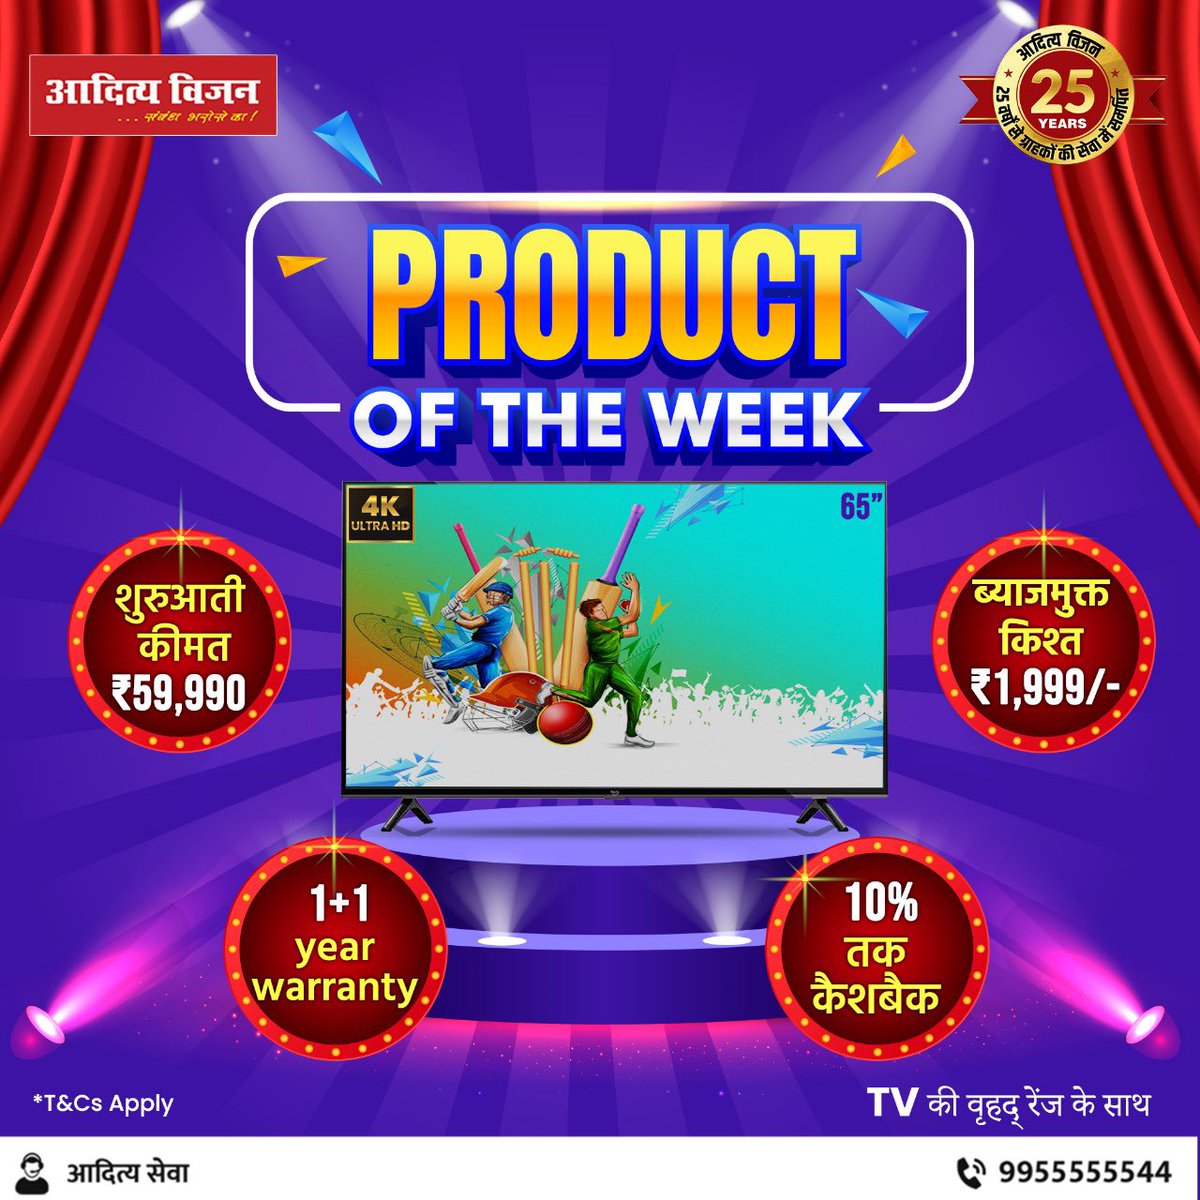 Product of the week!🤩🤩

आज ही आएं अपने नज़दीकी आदित्य विजन शाखा पर 👍👍
साथ ही पायें
☀️ हाथों हाथ डिलीवरी और इंस्टॉलेशन
☀️आसान एक्सचेंज
☀️ आदित्य सेवा से मिलेगा आपको समस्या का समाधान
*T&C apply
📱 9955555544
#AdityaVision #adityaseva #LedTV #Bihar #Jharkhand #UttarPradesh